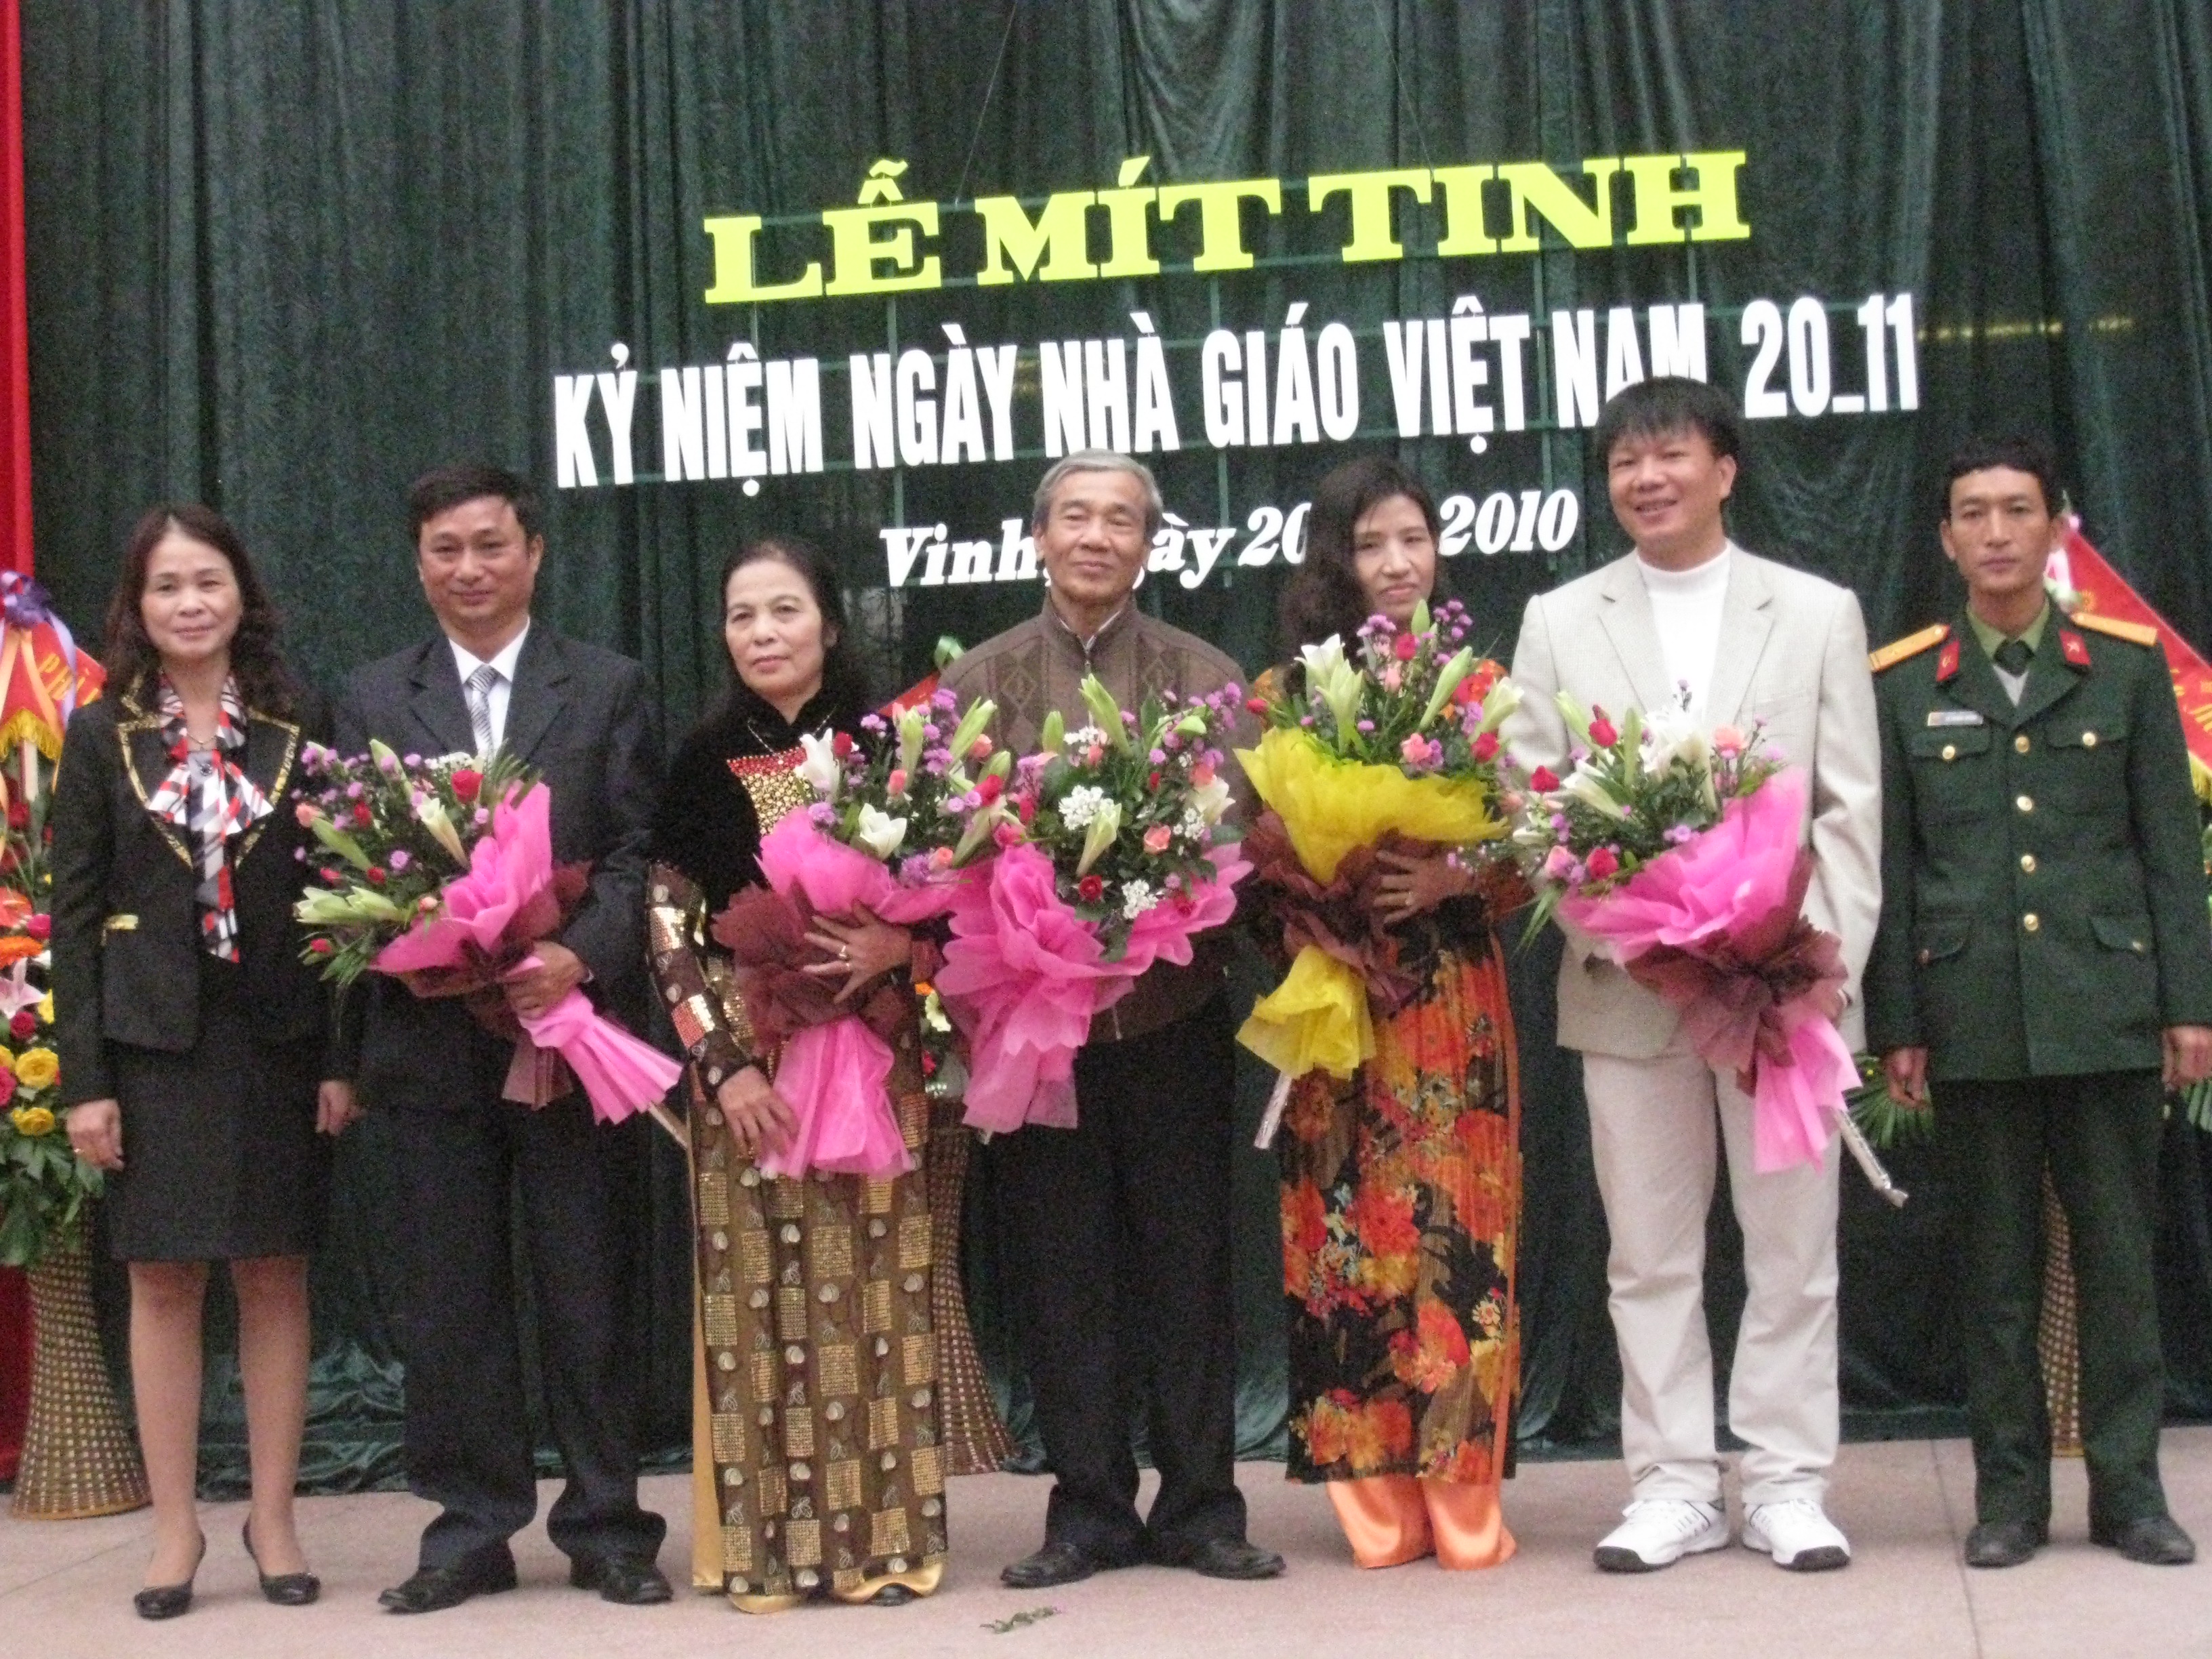 Lễ mít tinh kỷ niệm ngày nhà giáo Việt Nam 20 -11